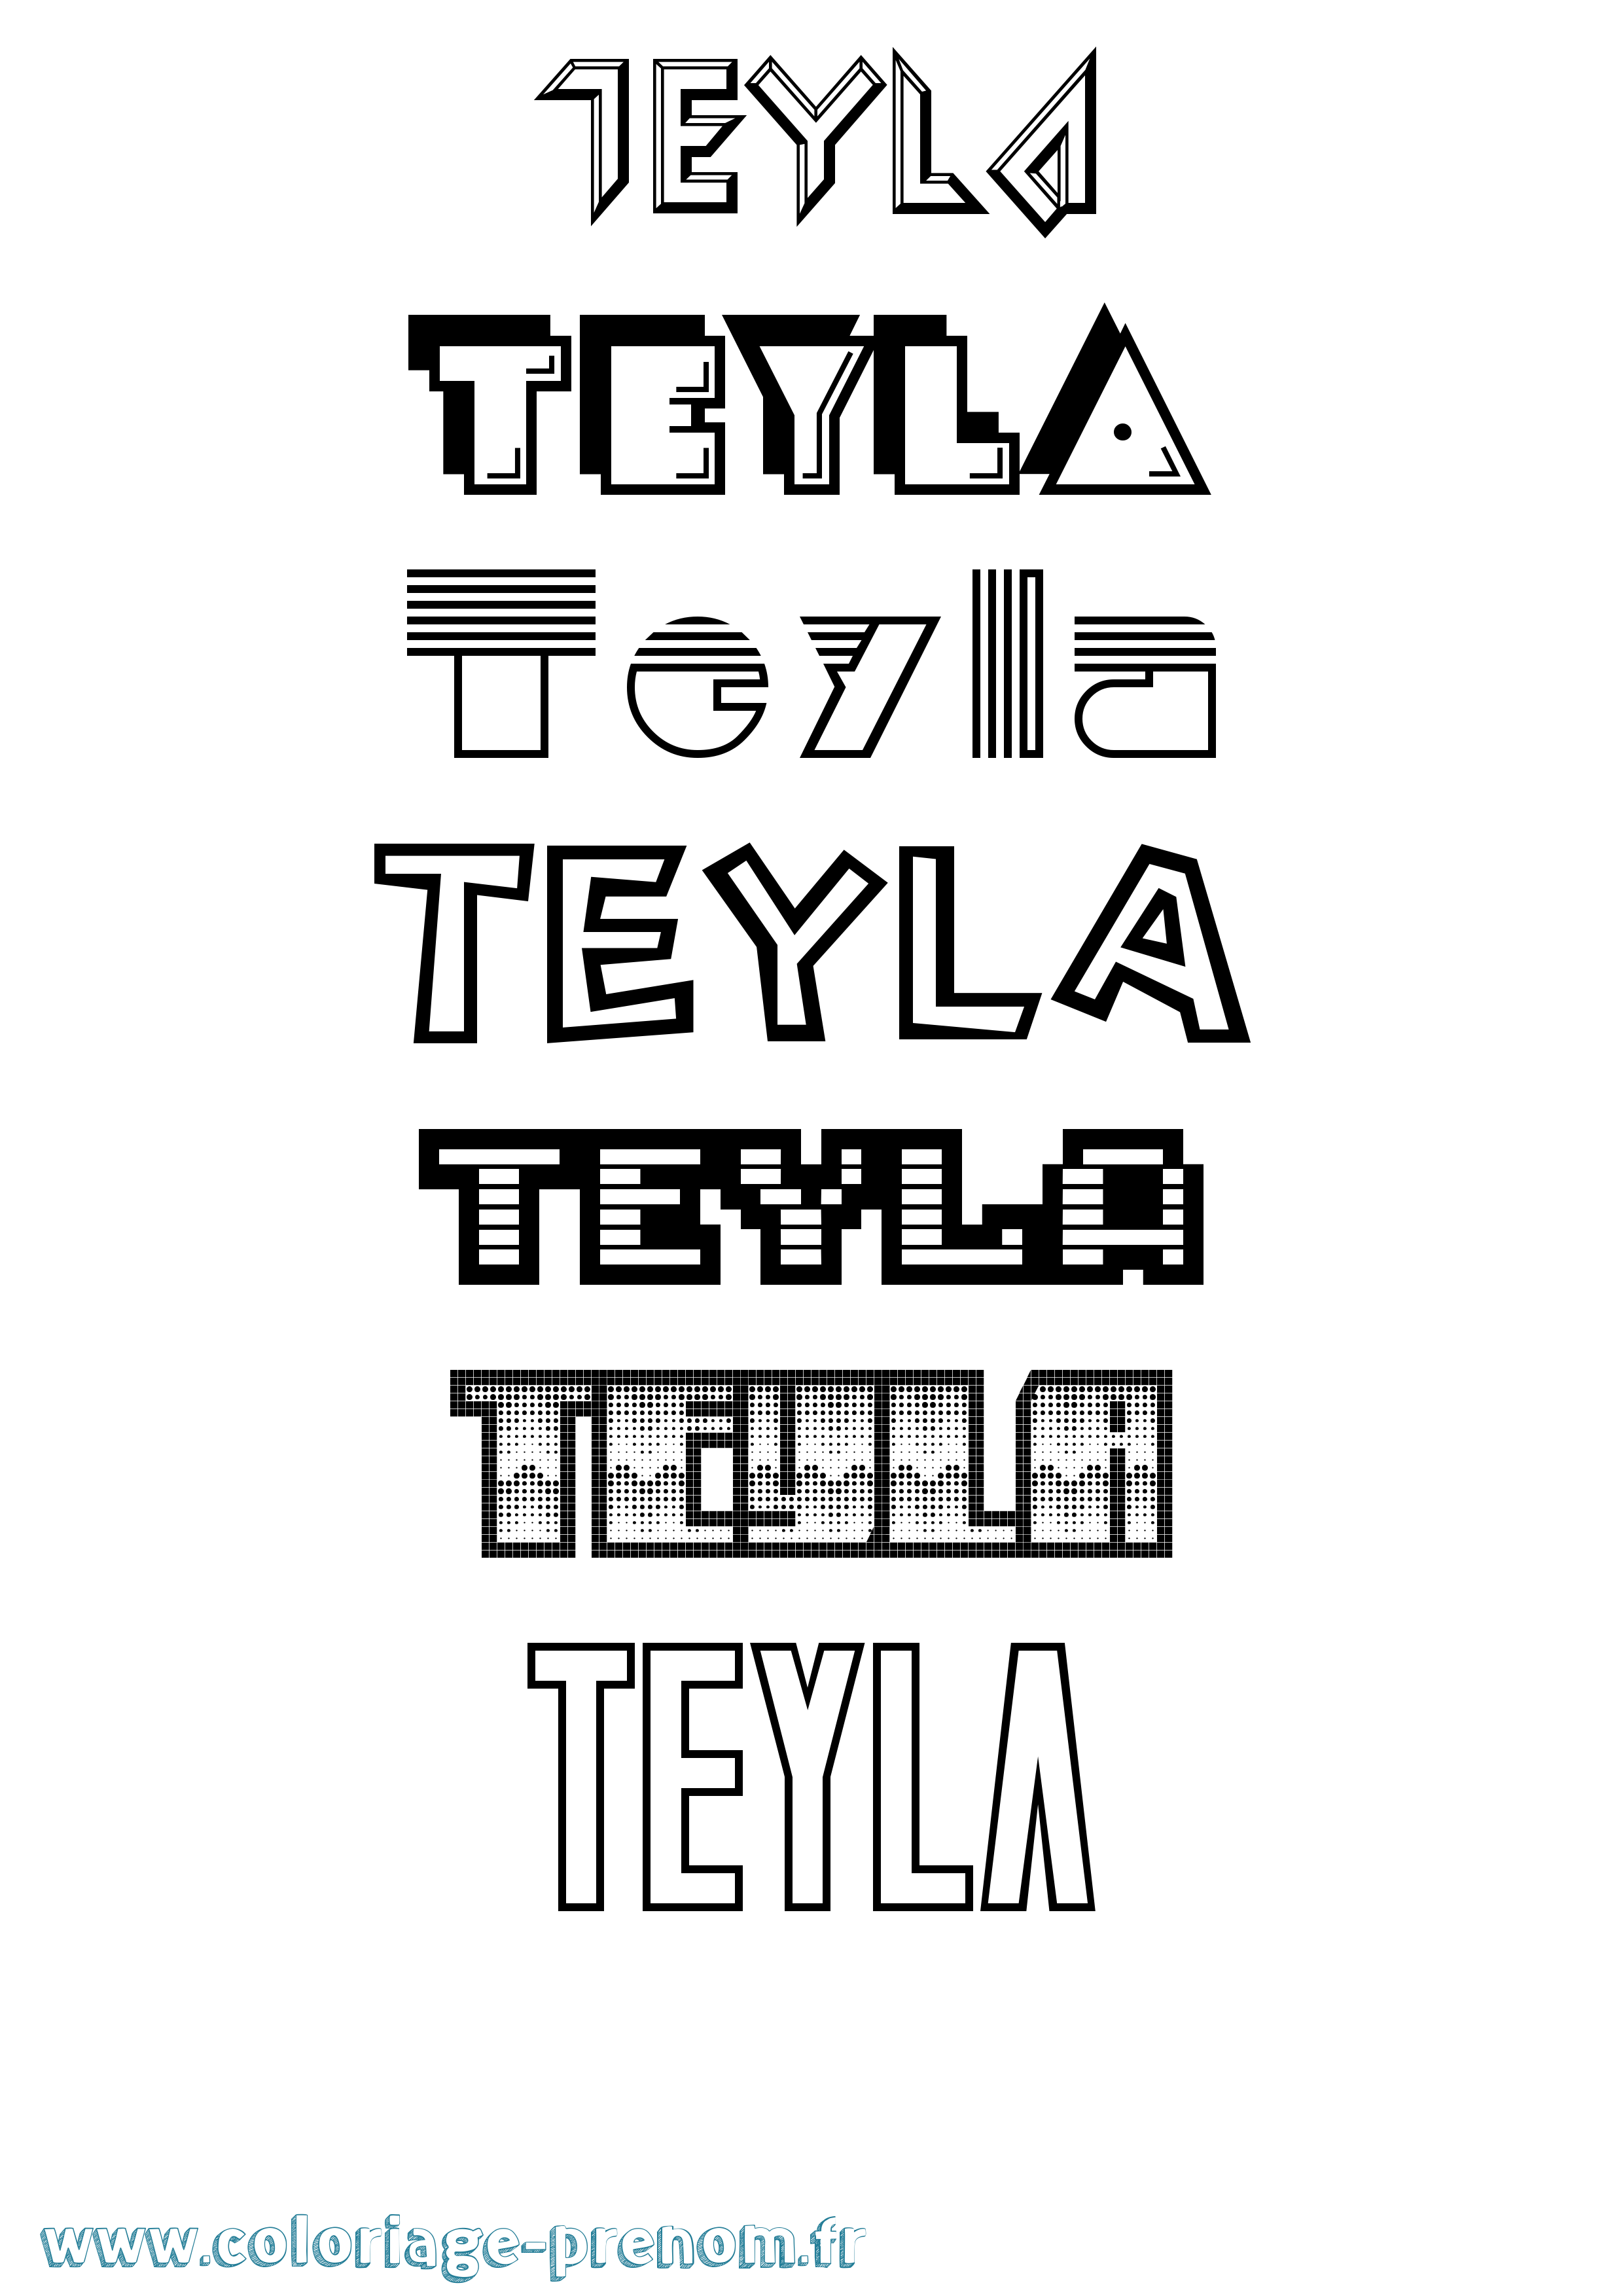 Coloriage prénom Teyla Jeux Vidéos